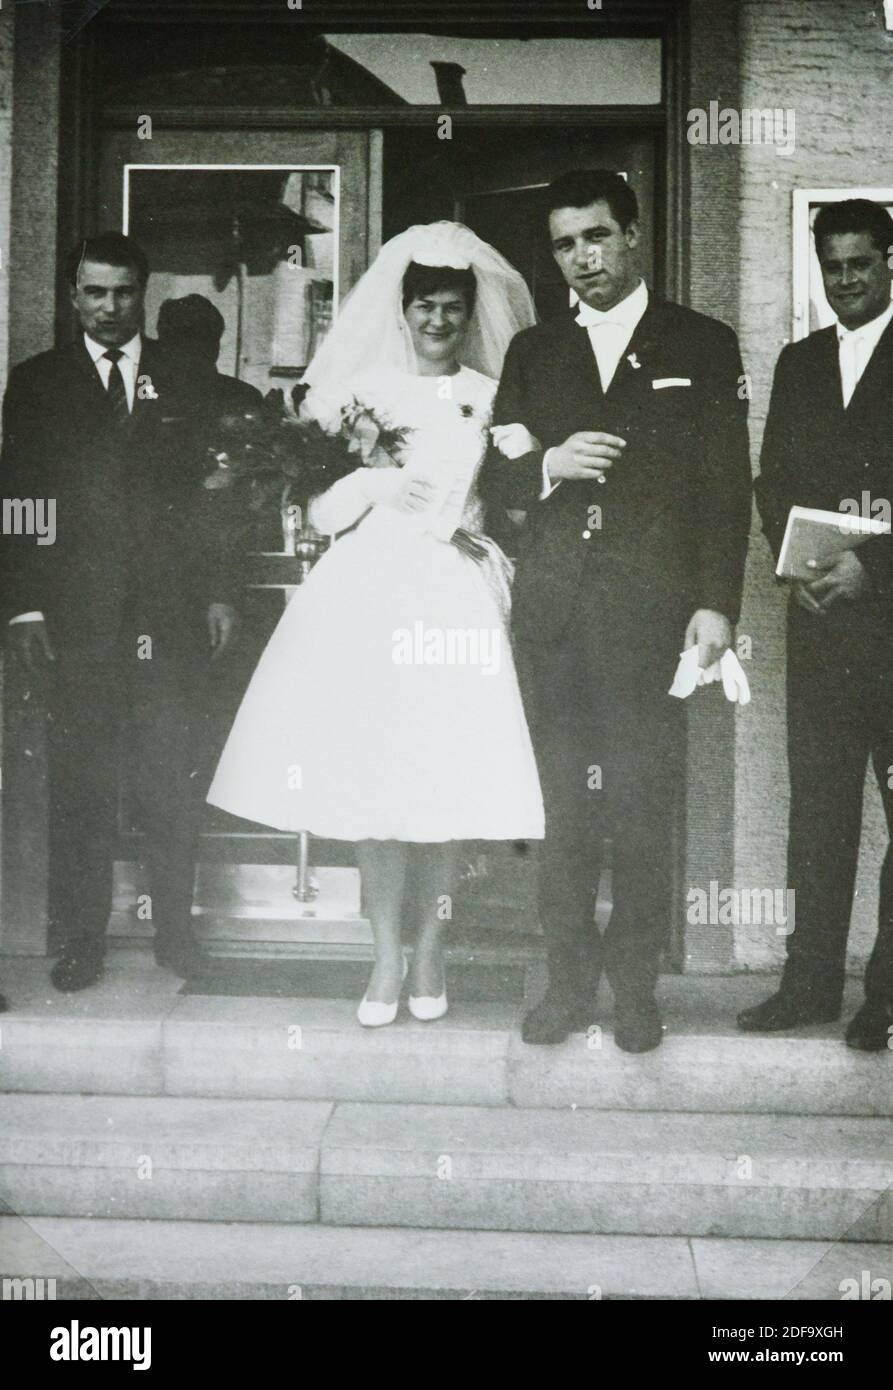 Foto storica: Matrimonio maggio 19,1962 a Biessenhofen, Baviera, Germania. Riproduzione a Marktoberdorf, Germania, 26 ottobre 2020. © Peter Schatz / Alamy foto d'archivio Foto Stock